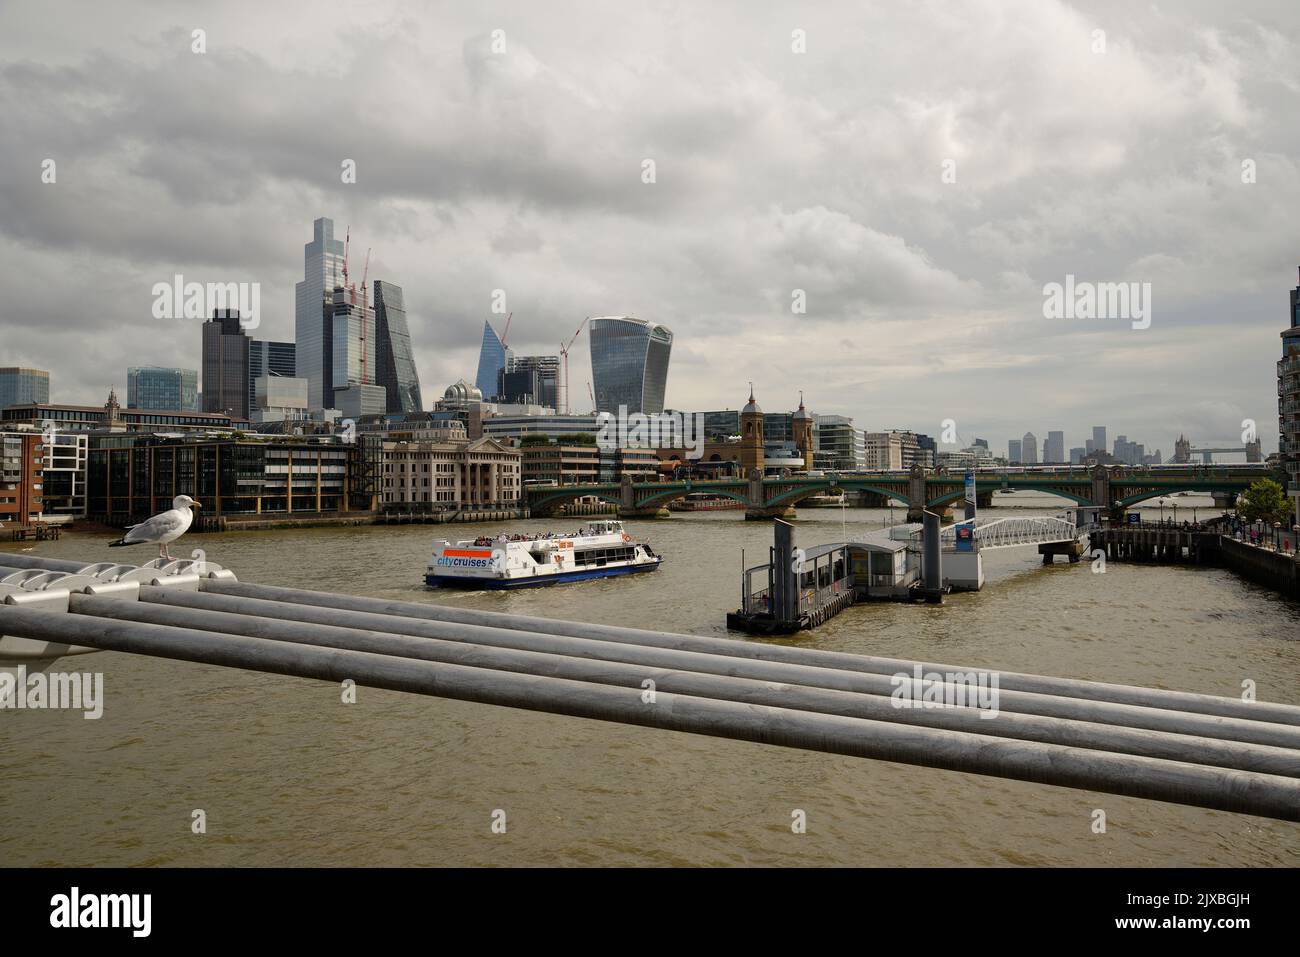 La ville de Londres depuis le Millennium Bridge avec un bateau touristique qui descend le long de la rivière. Banque D'Images